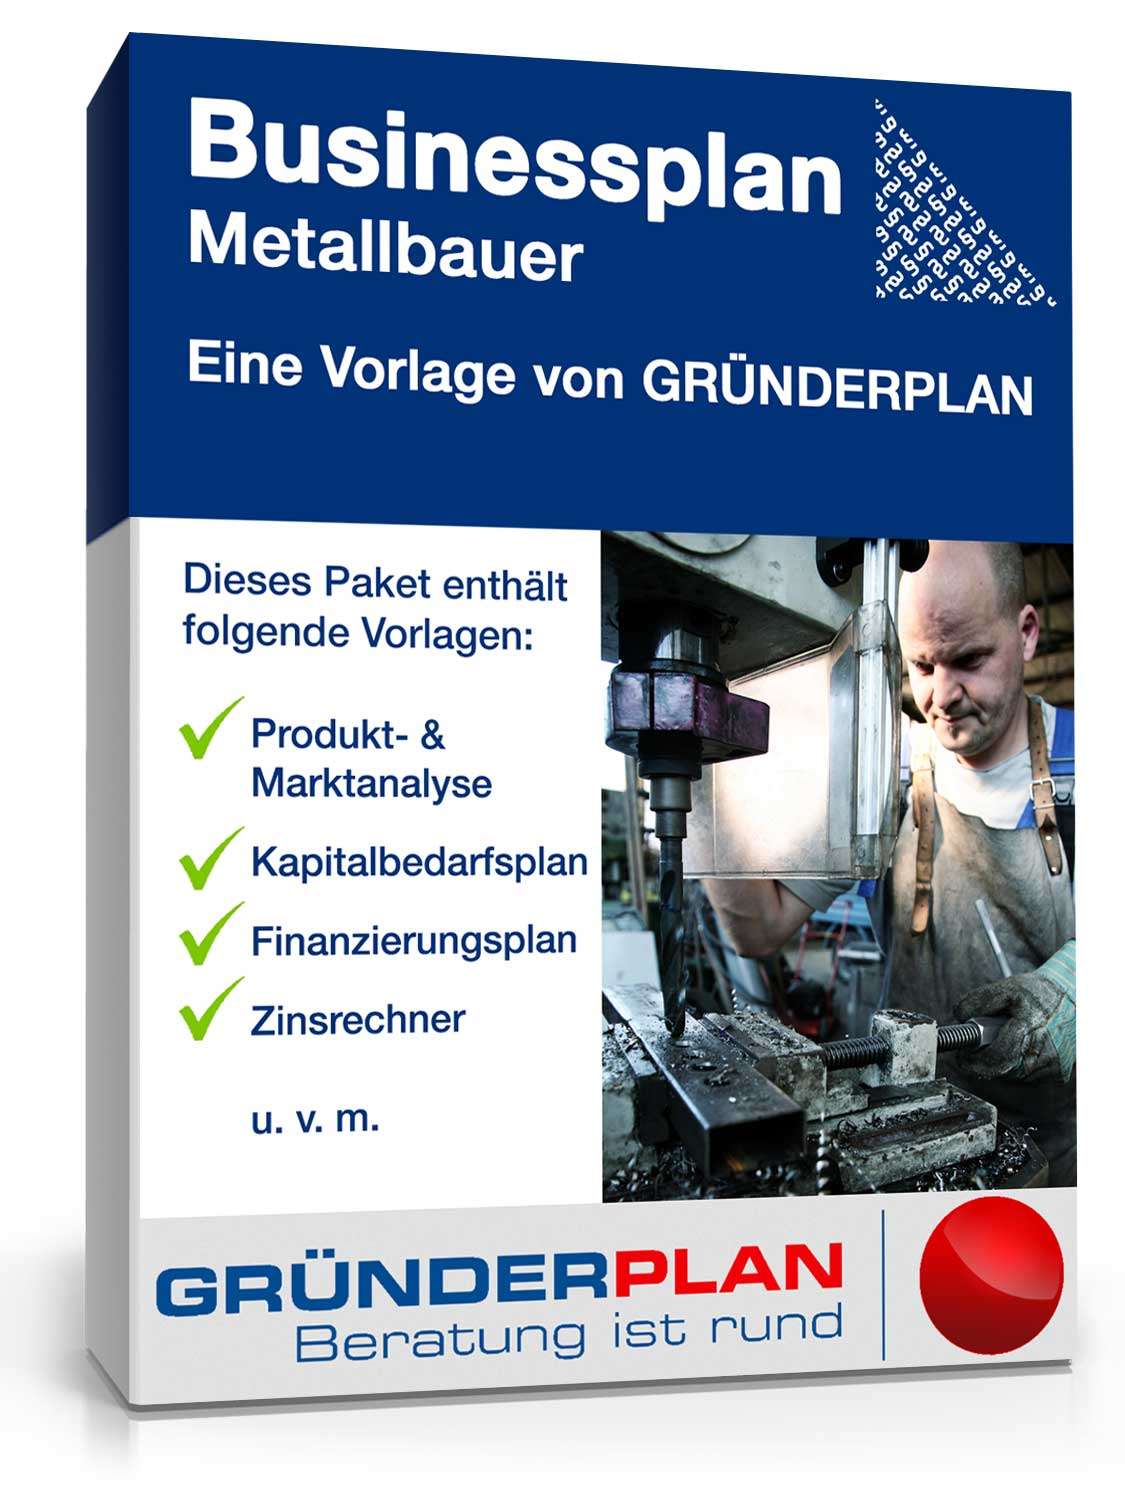 Hauptbild des Produkts: Businessplan Metallbauer von Gründerplan